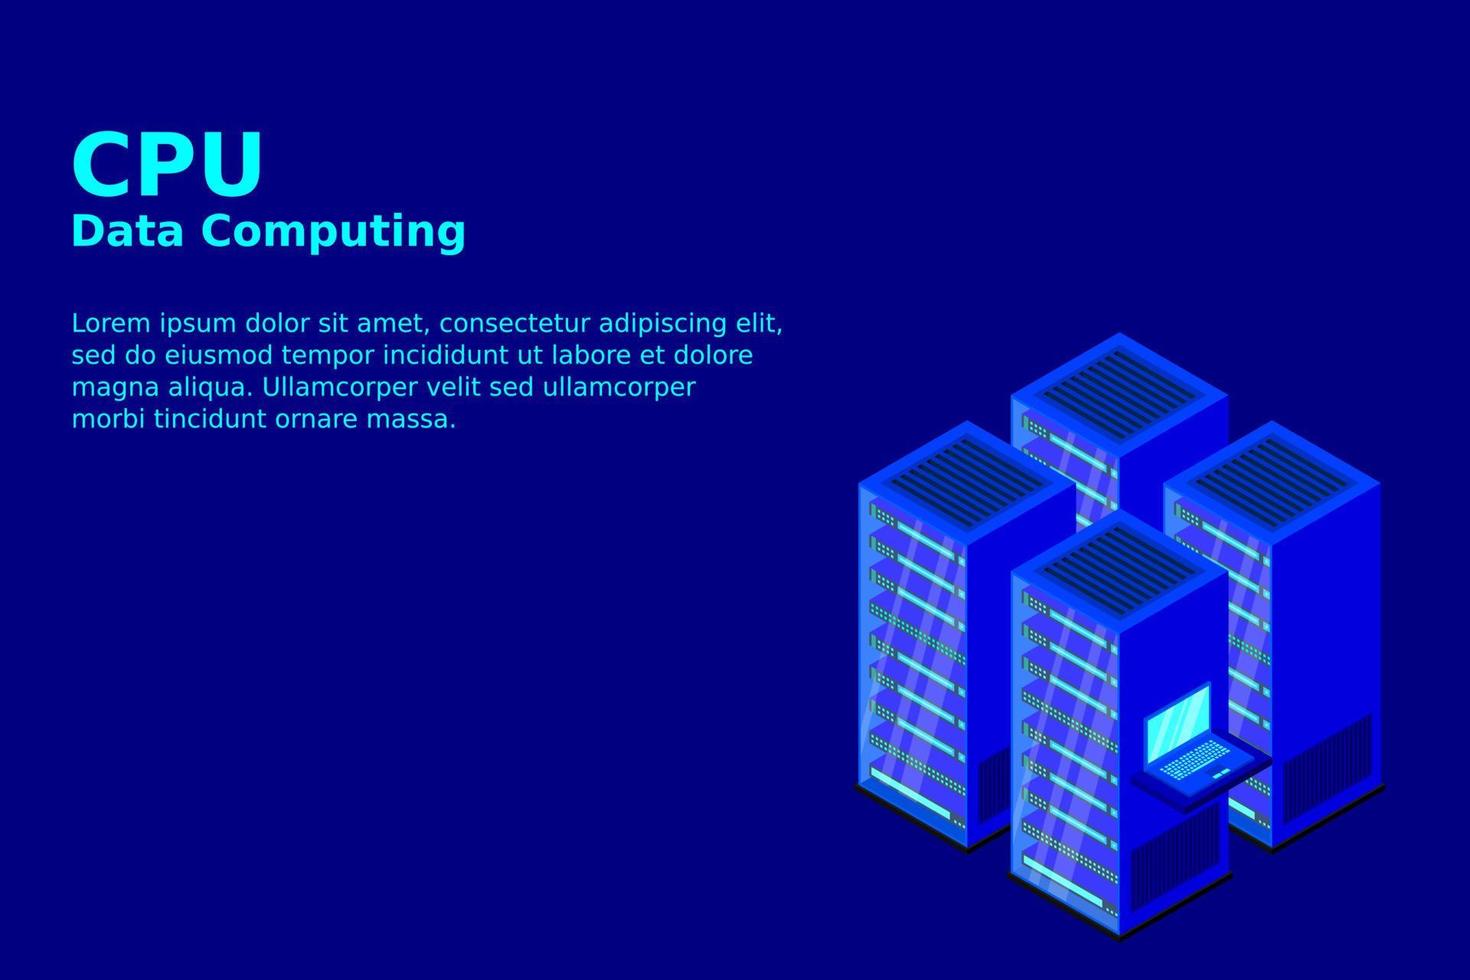 mainframe, servidor alimentado, concepto de alta tecnología, centro de datos, almacenamiento de datos en la nube vector